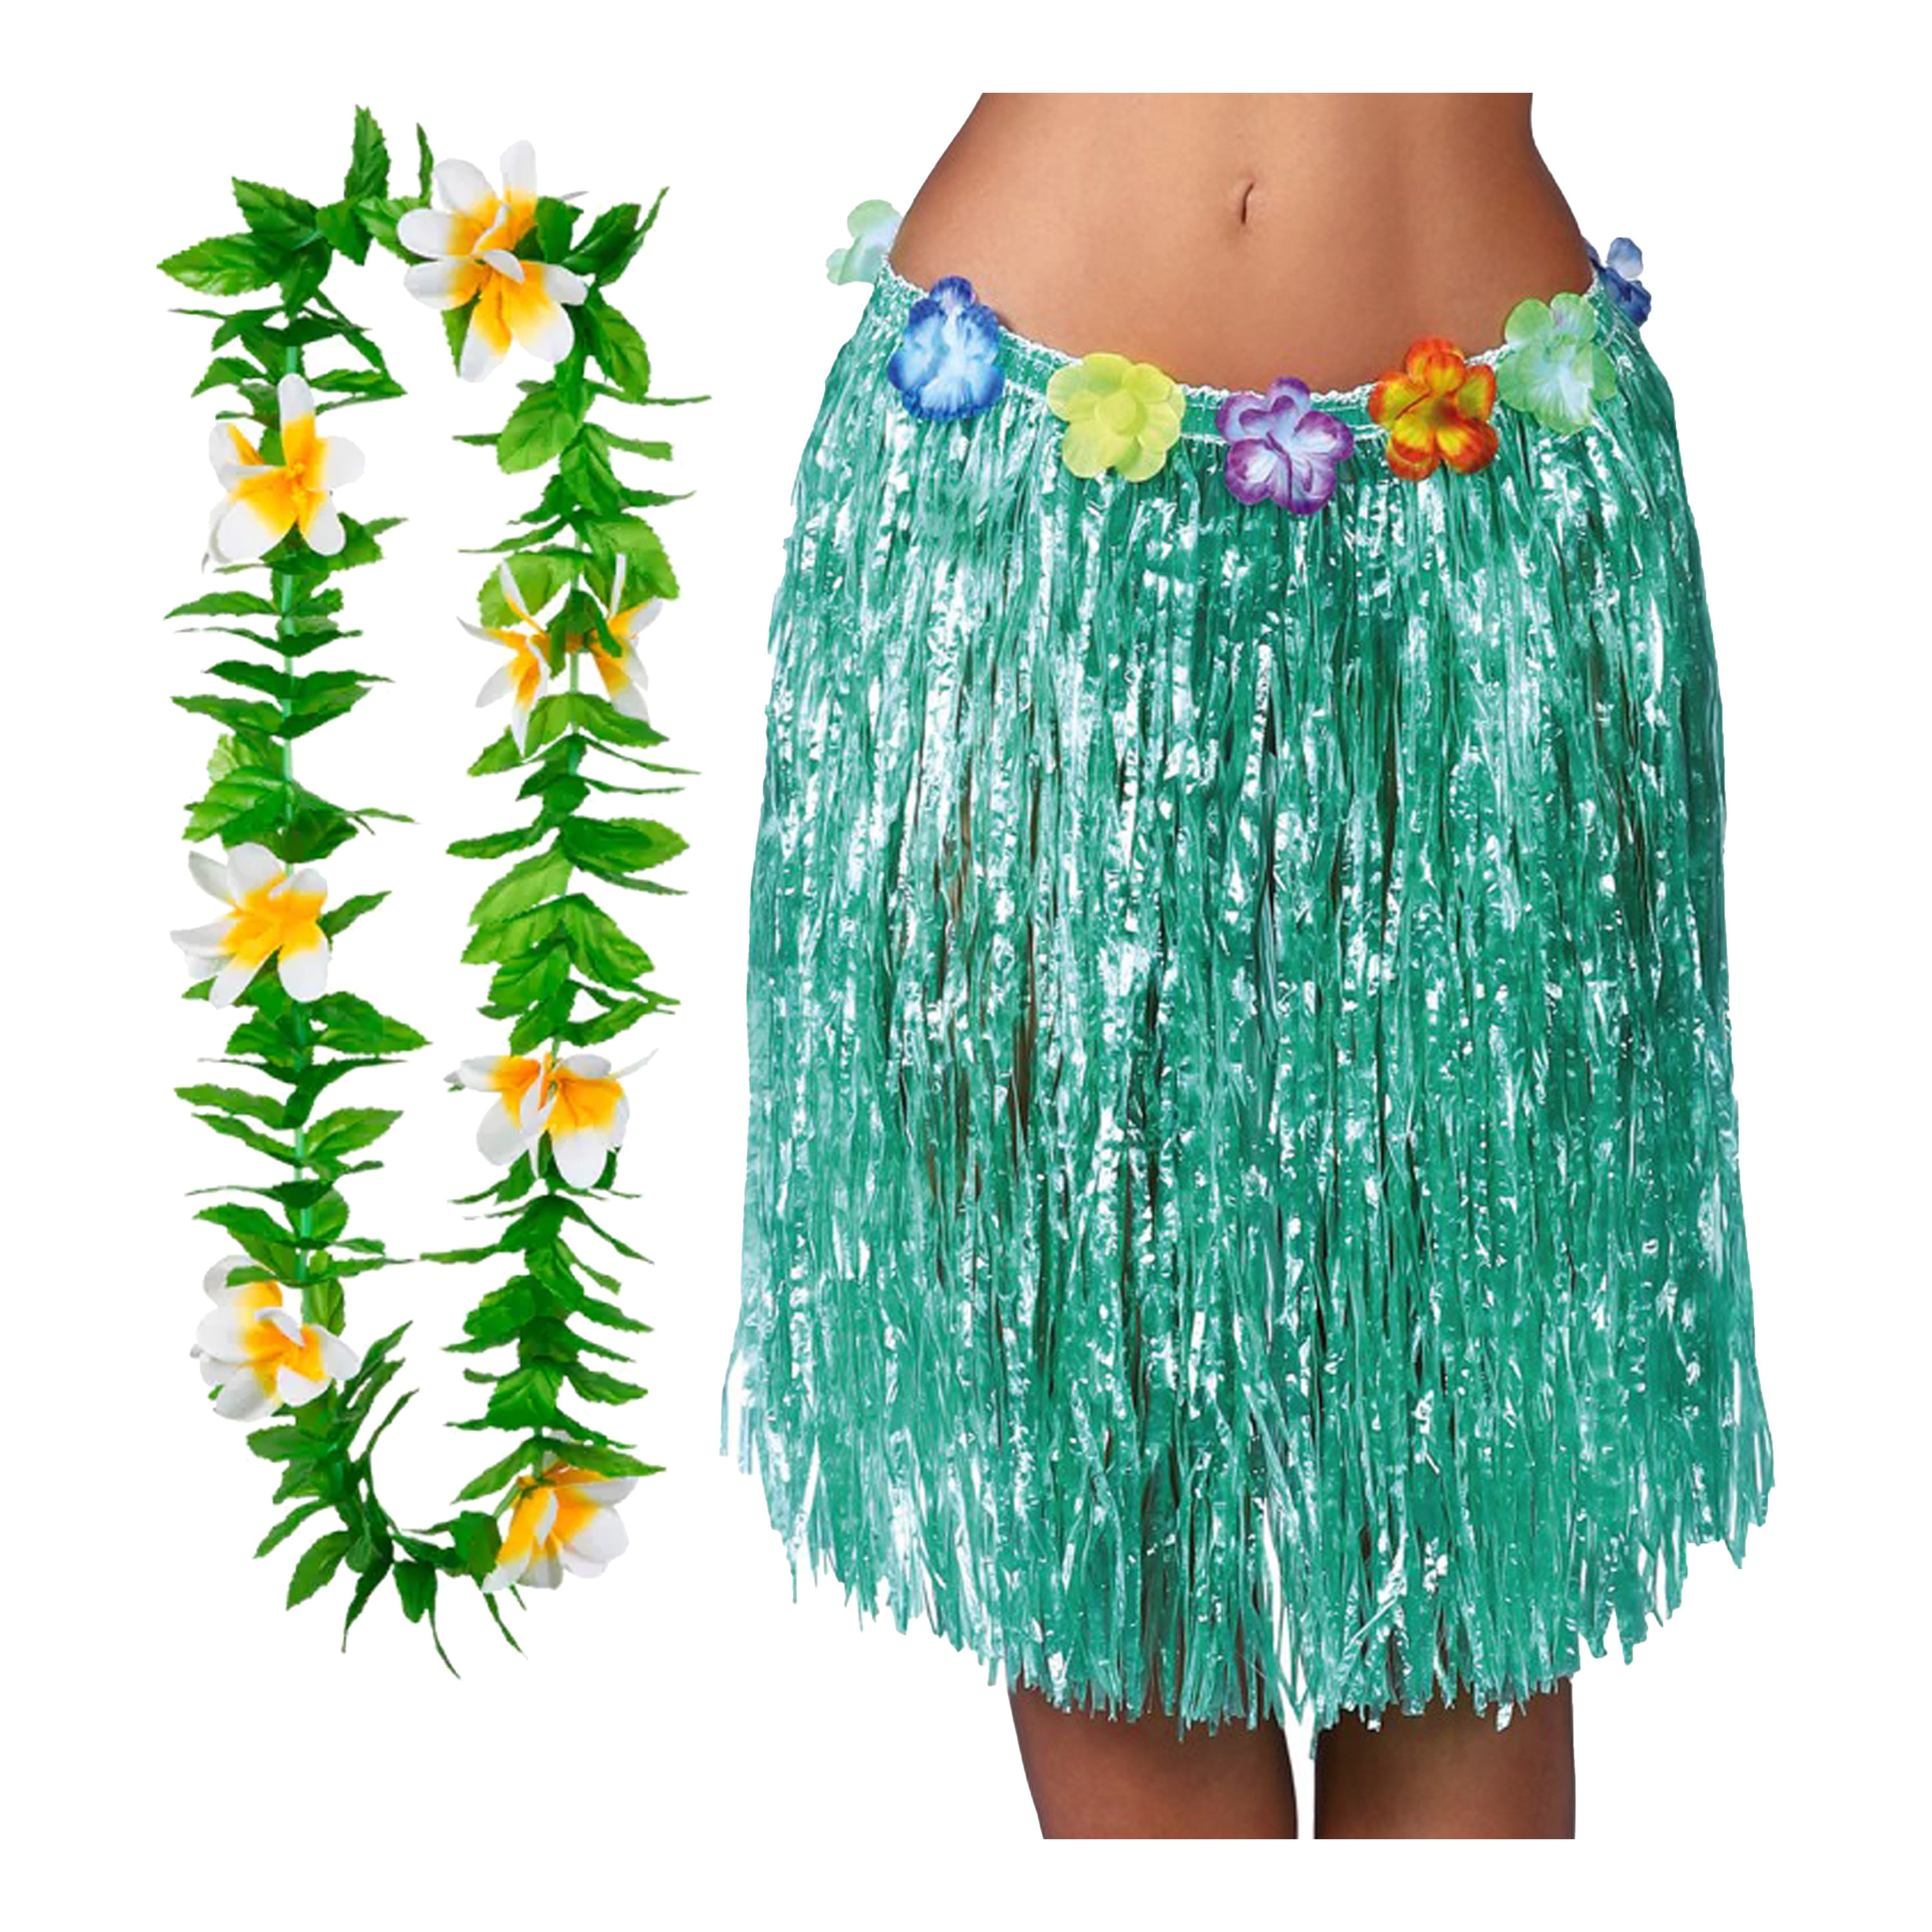 Toppers Hawaii verkleed hoela rokje en bloemenkrans volwassenen groen tropisch themafeest hoela